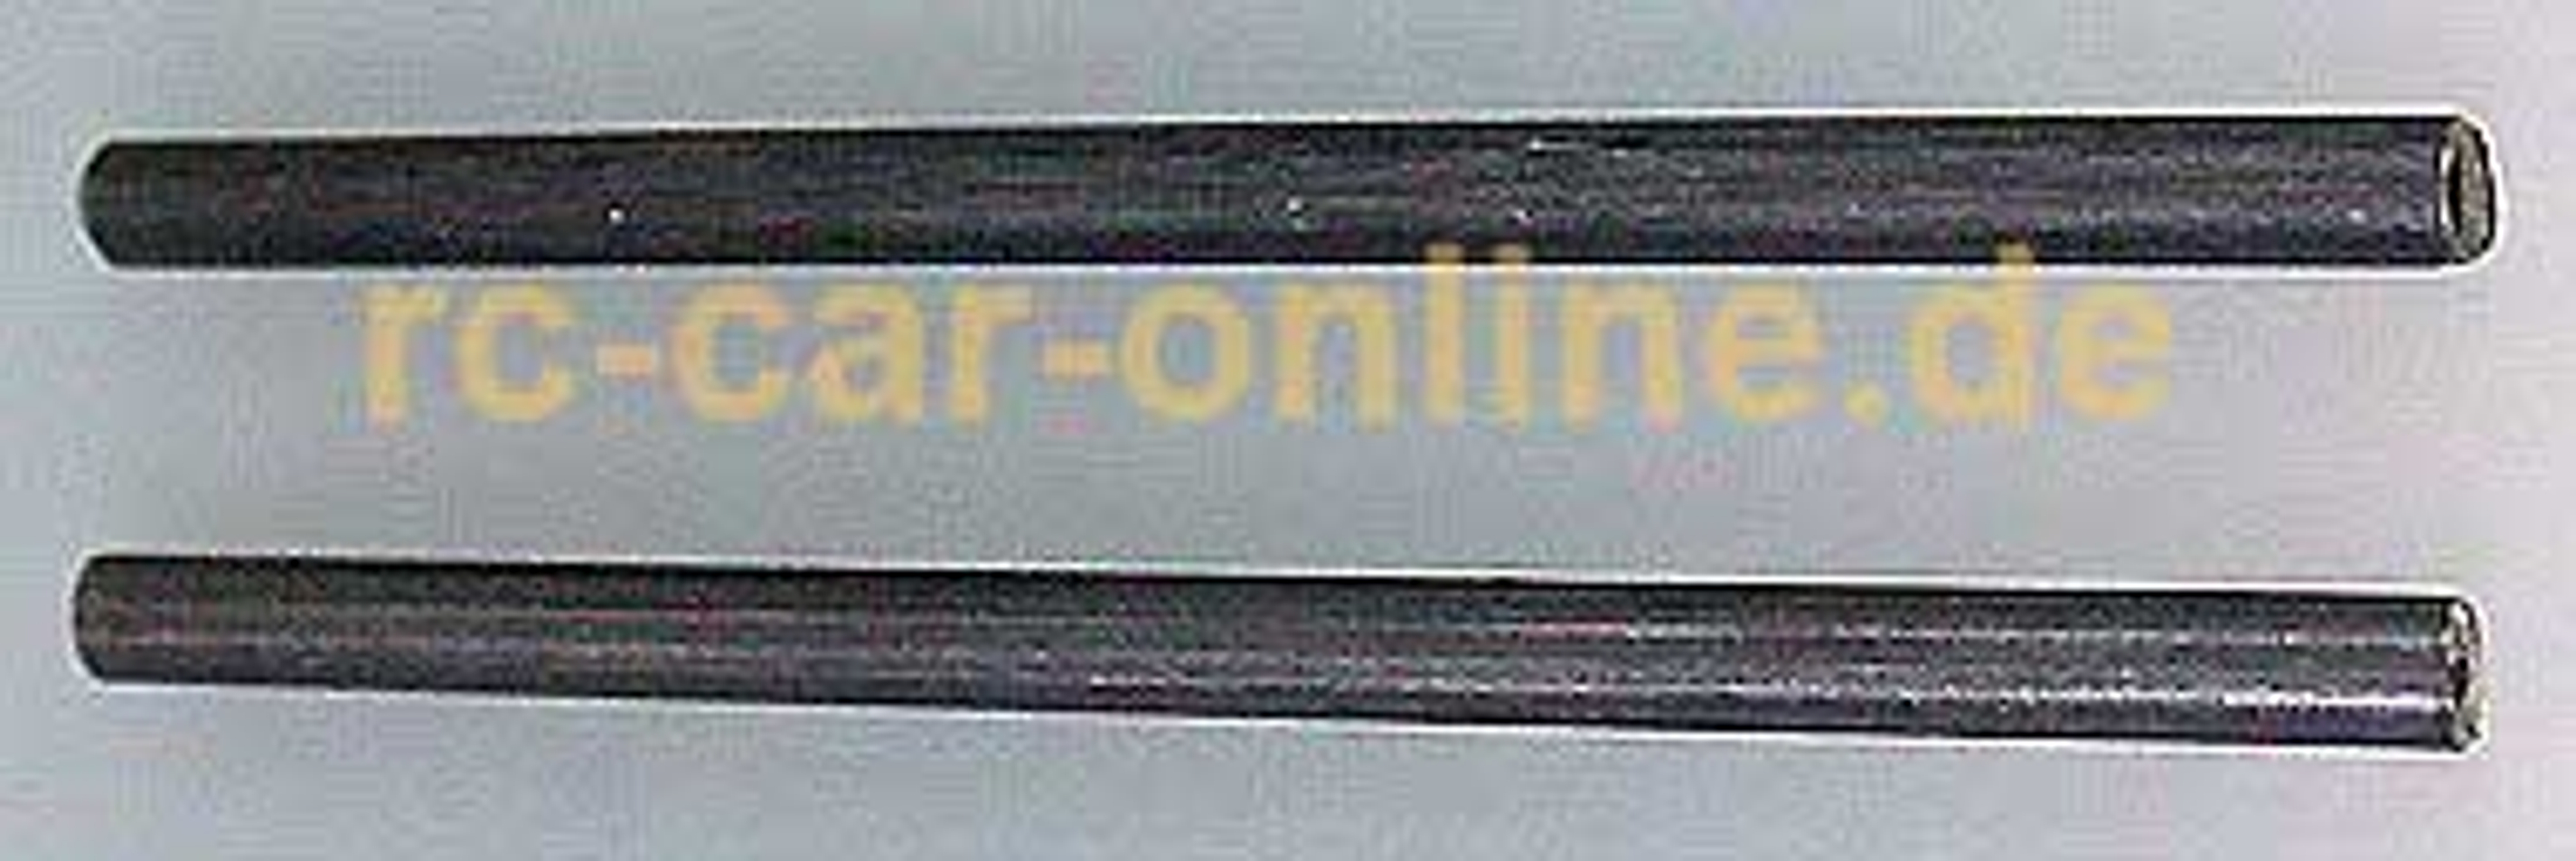 6440/01 FG Stabilizer rods - 2pcs.